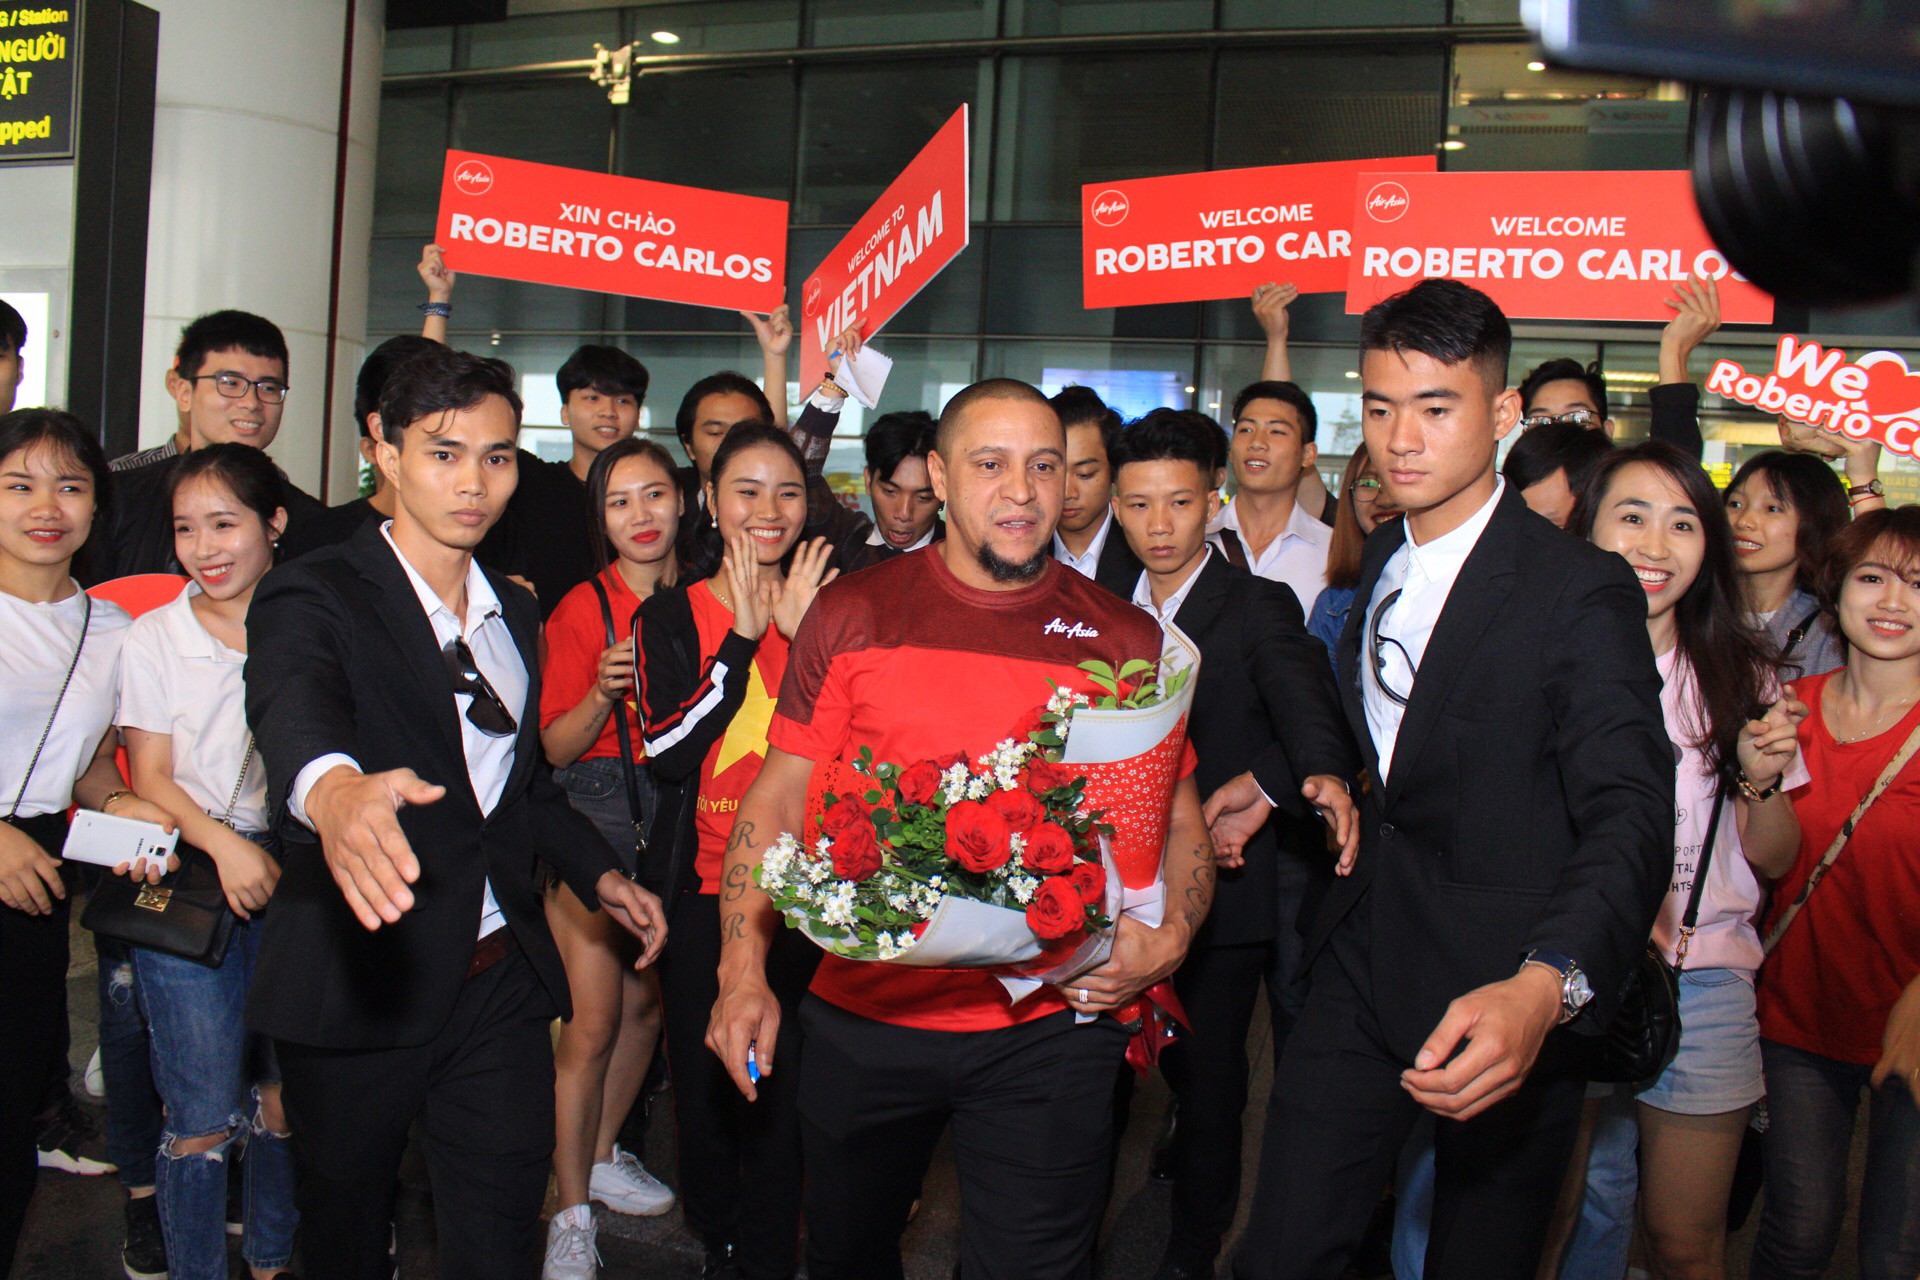 Huyền thoại vĩ đại Roberto Carlos chính thức có mặt ở Hà Nội, chuẩn bị đối đầu Công Vinh trước trận Việt Nam - Malaysia - Ảnh 2.